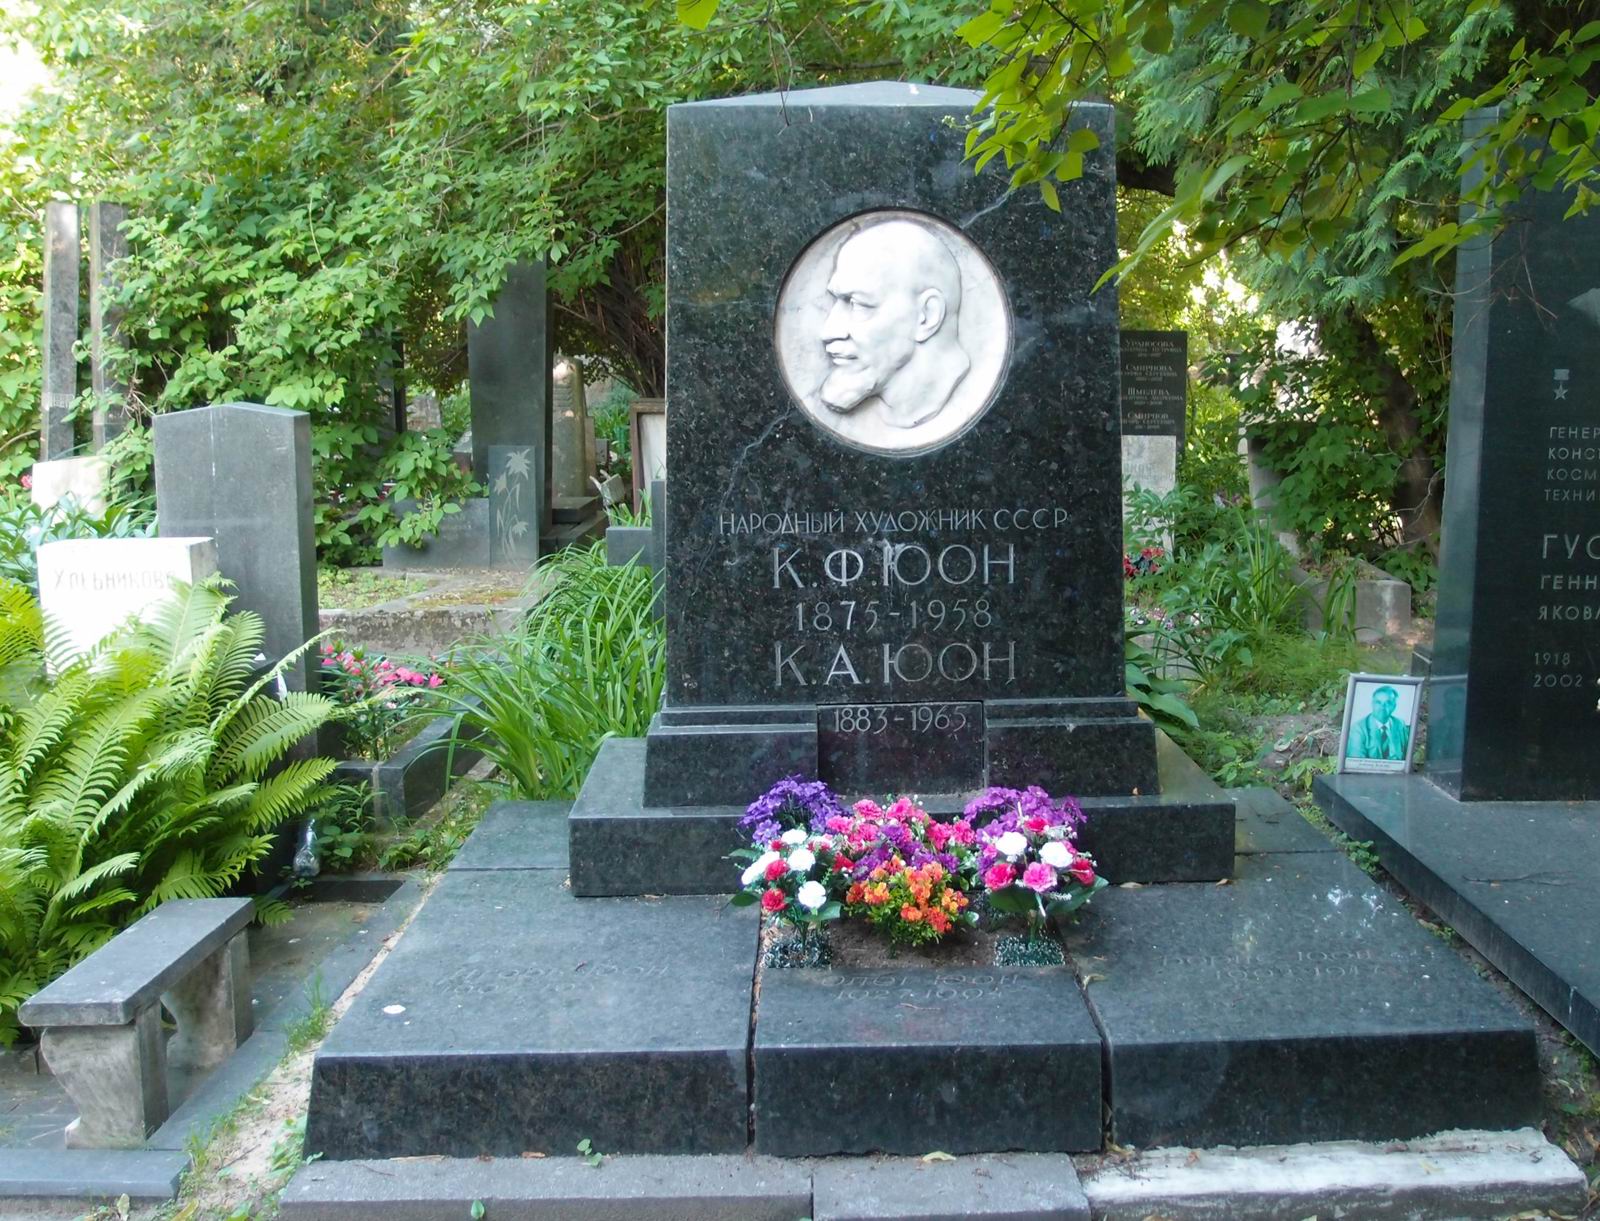 Памятник на могиле Юона К.Ф. (1875-1958), ск. Е.Белашова, арх. Л.Холмянский, на Новодевичьем кладбище (4-51-7). Нажмите левую кнопку мыши чтобы увидеть фрагмент памятника.